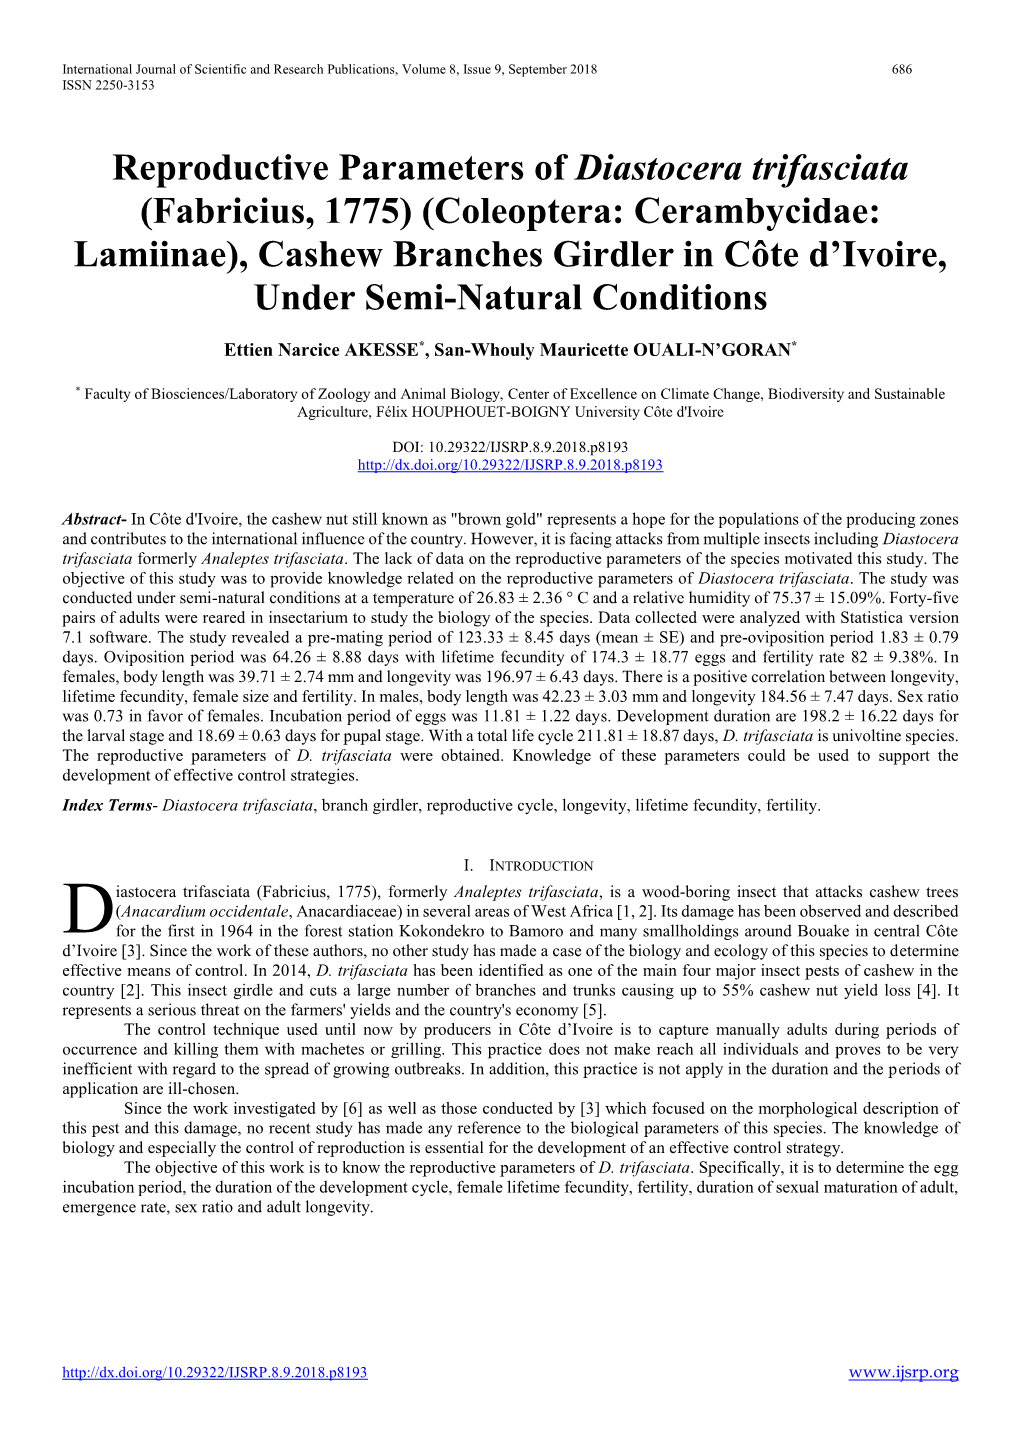 Reproductive Parameters of Diastocera Trifasciata (Fabricius